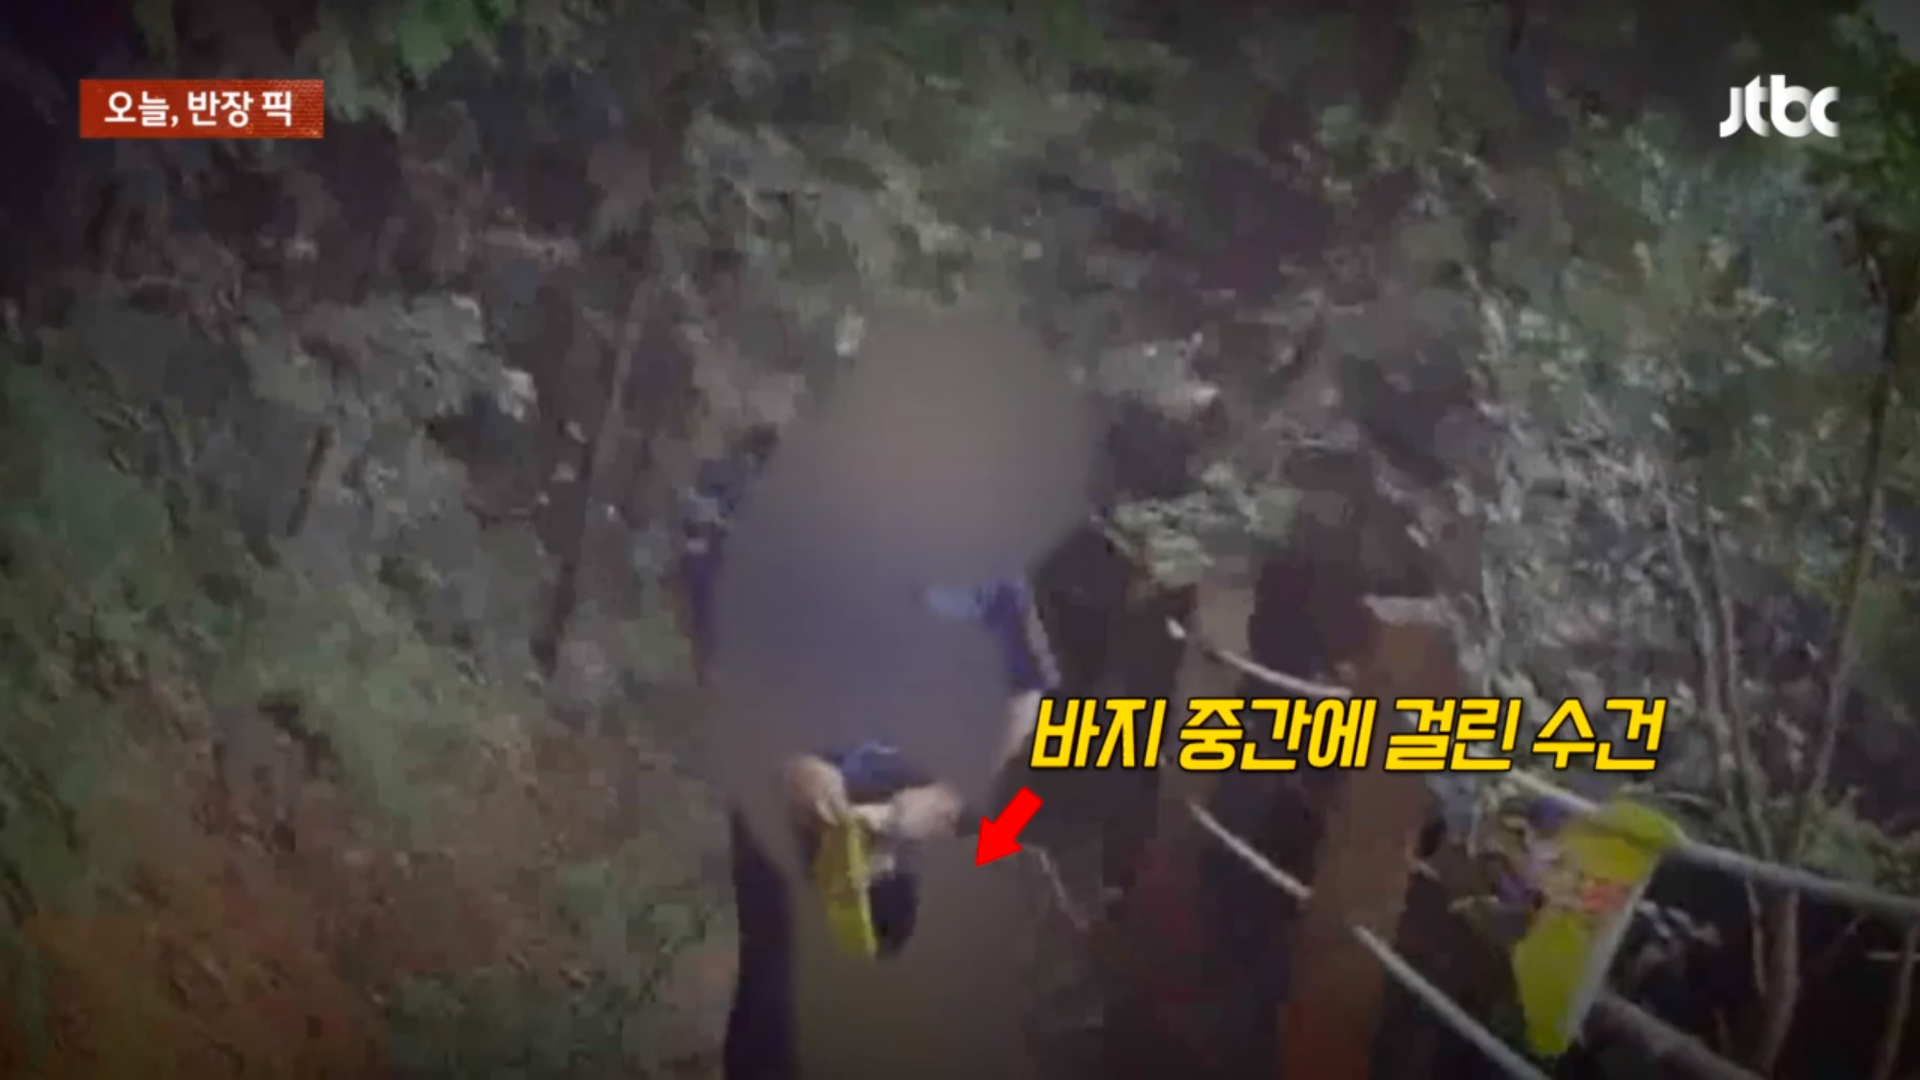 지난 4일 JTBC ‘사건반장’에 따르면 지난달 9일 오전 8시쯤 전남의 한 등산로에서 바지에 구멍을 뚫은 뒤 수건을 두르고는 여성들에게 자신의 신체 부위를 노출한 60대 남성이 체포됐다. JTBC ‘사건반장’ 캡처